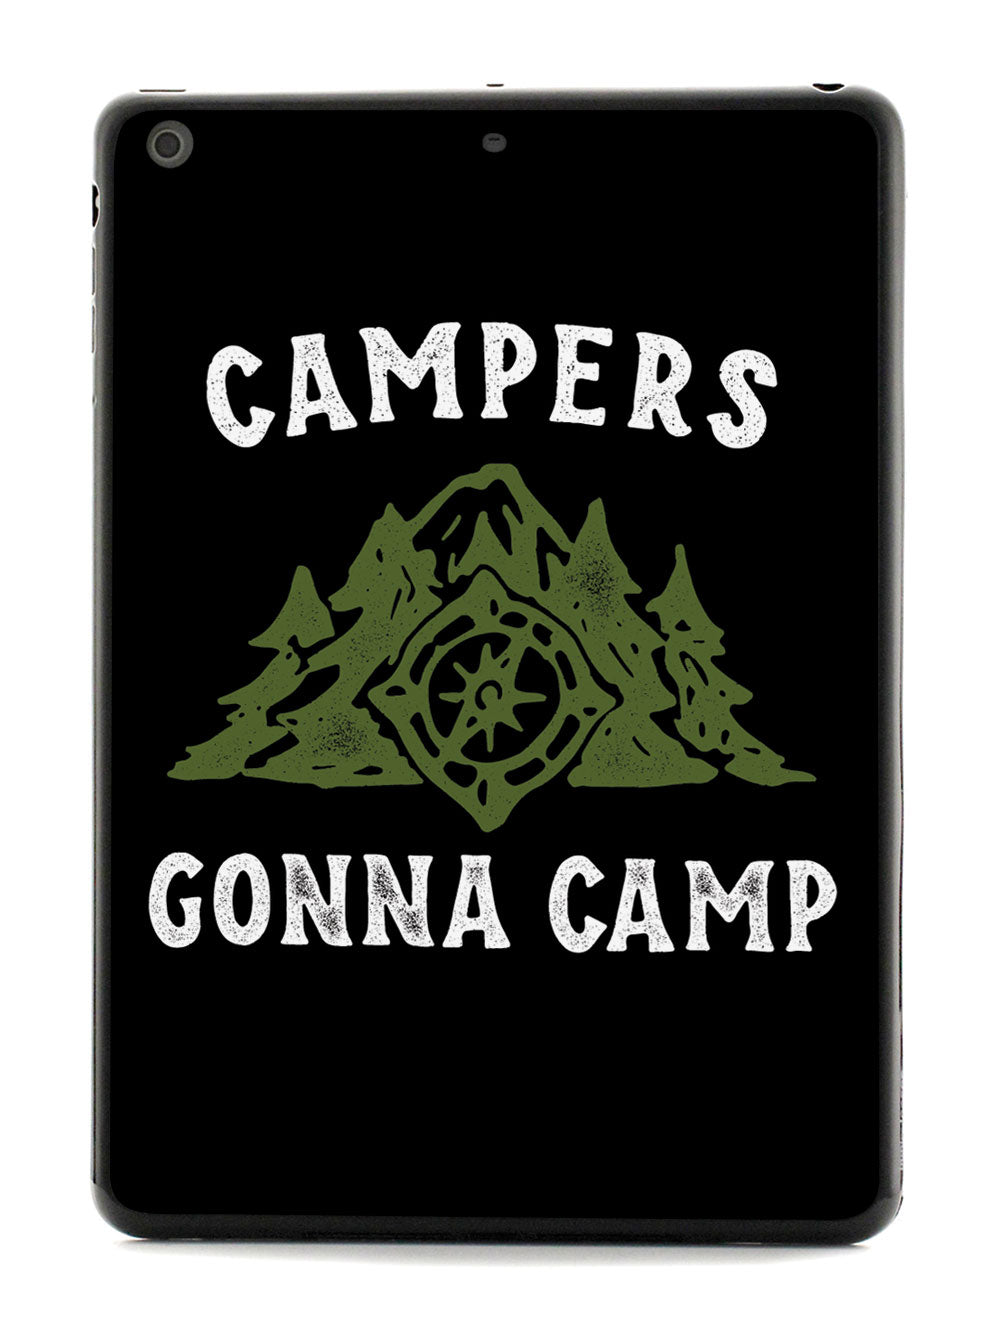 Campers Gonna Camp - Black Case